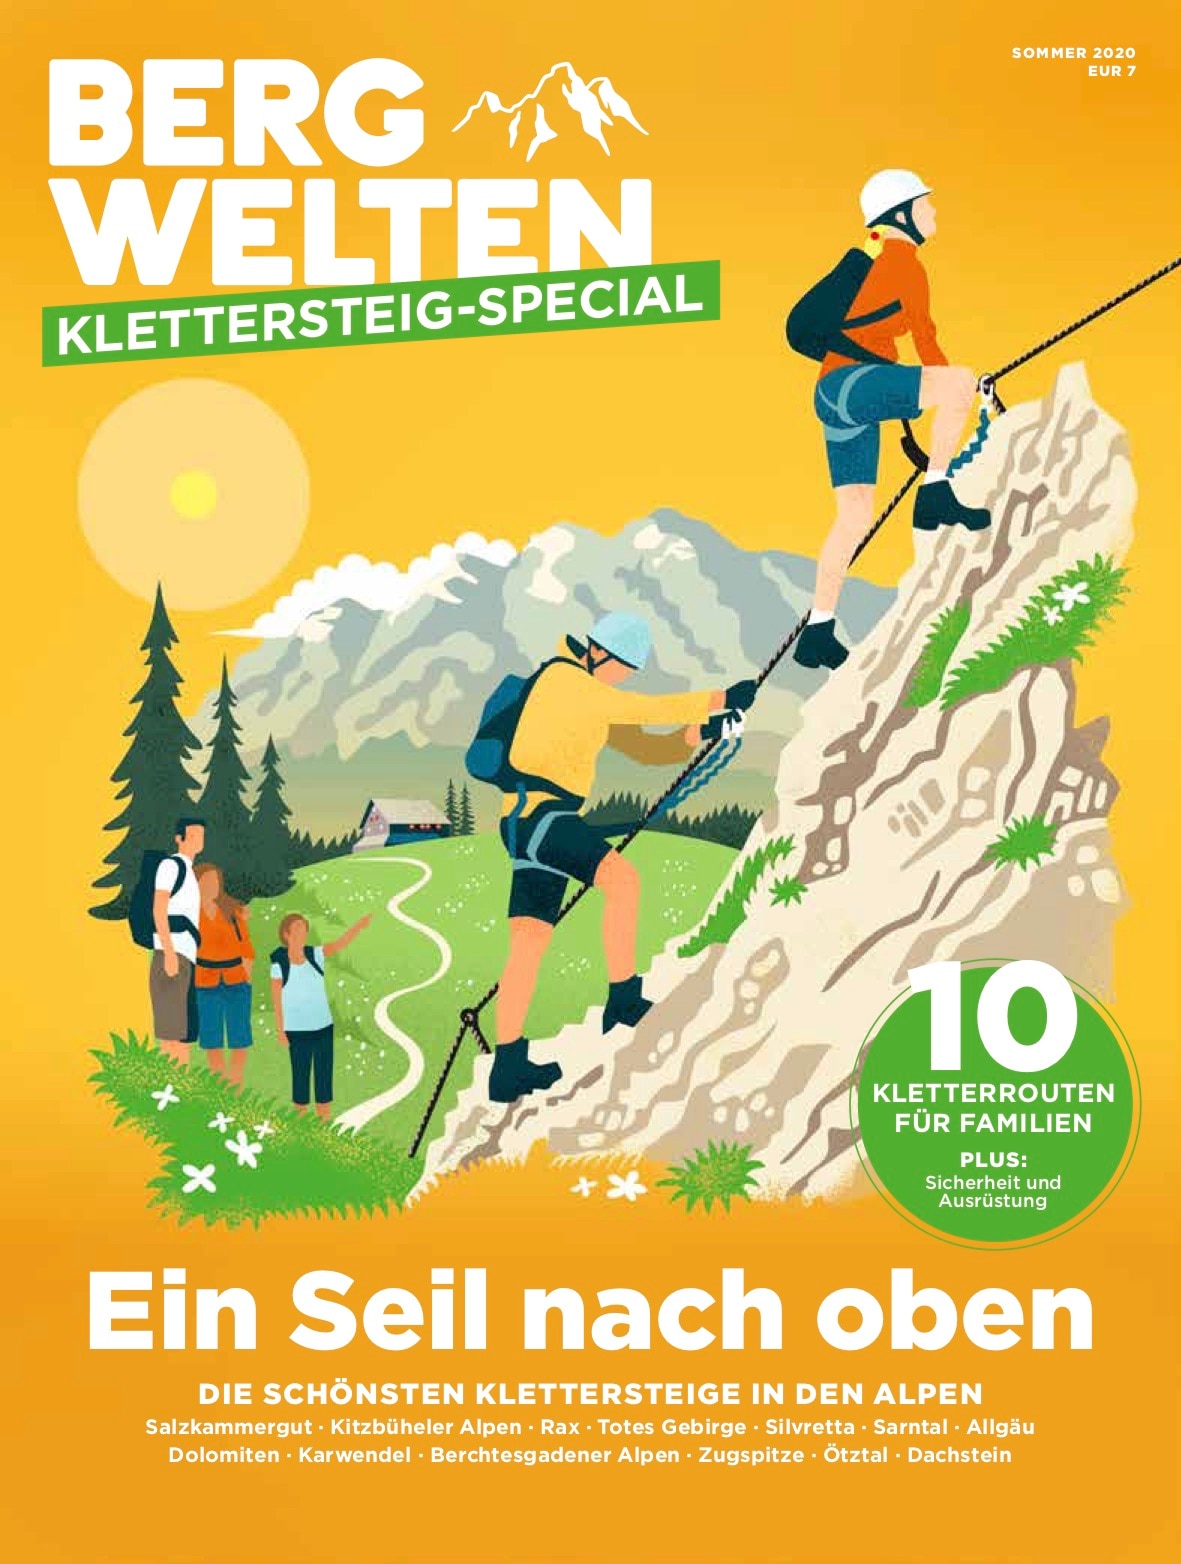 Das Klettersteig-Special findet ihr überall, wo es Zeitschriften gibt